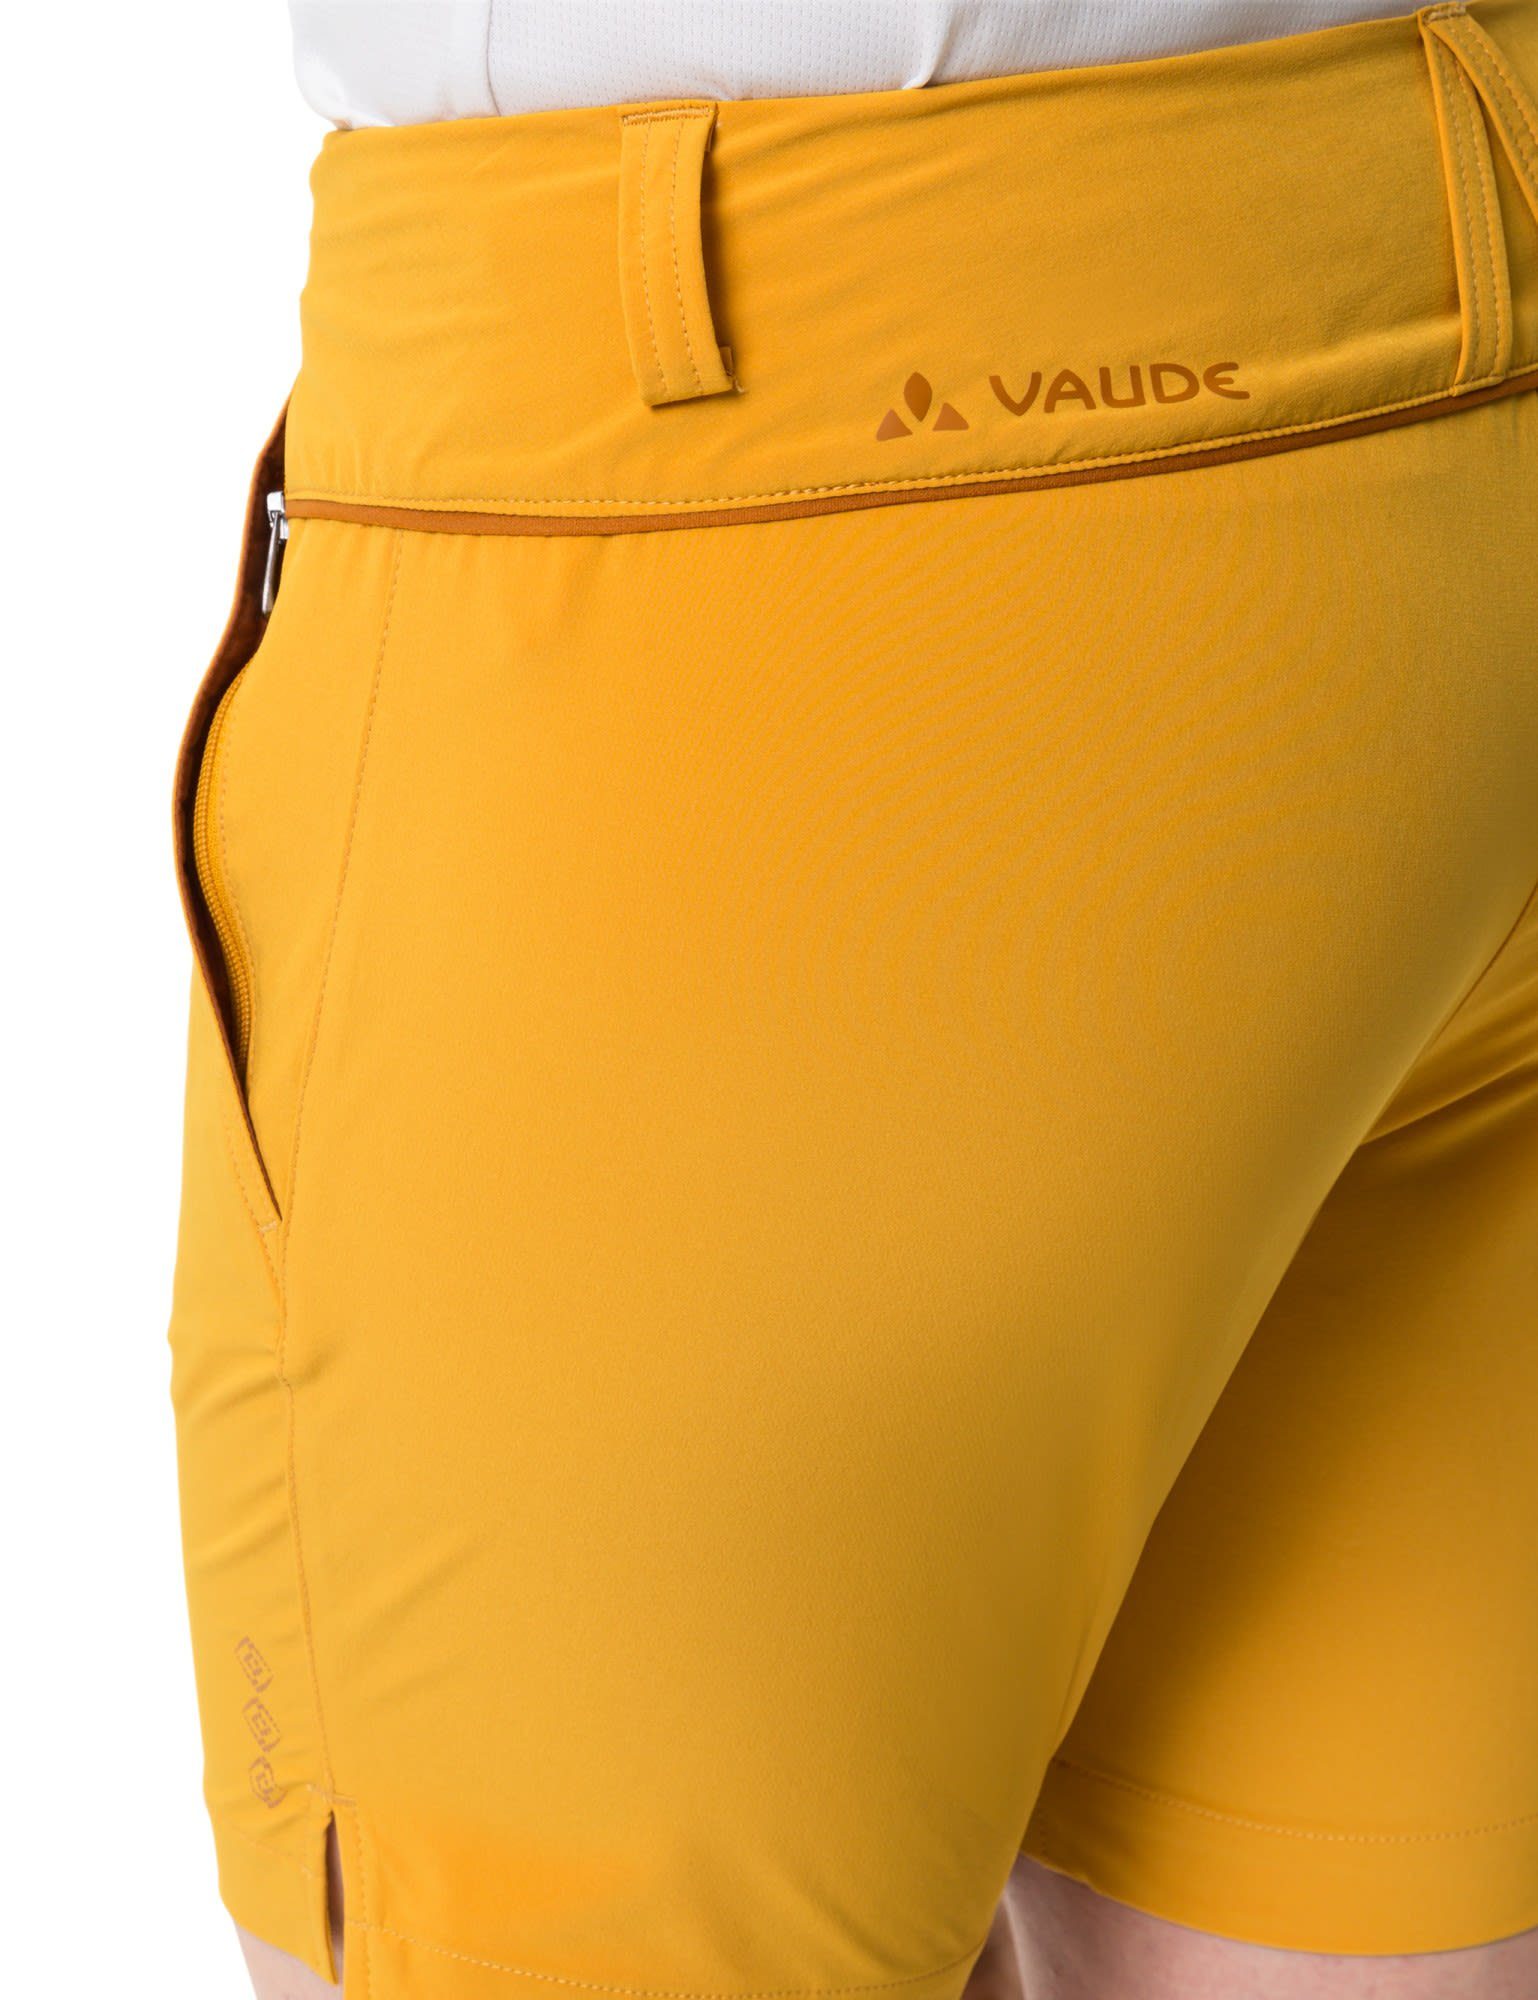 Damen Womens Skomer Burnt Vaude Iii Shorts Shorts VAUDE Strandshorts Yellow